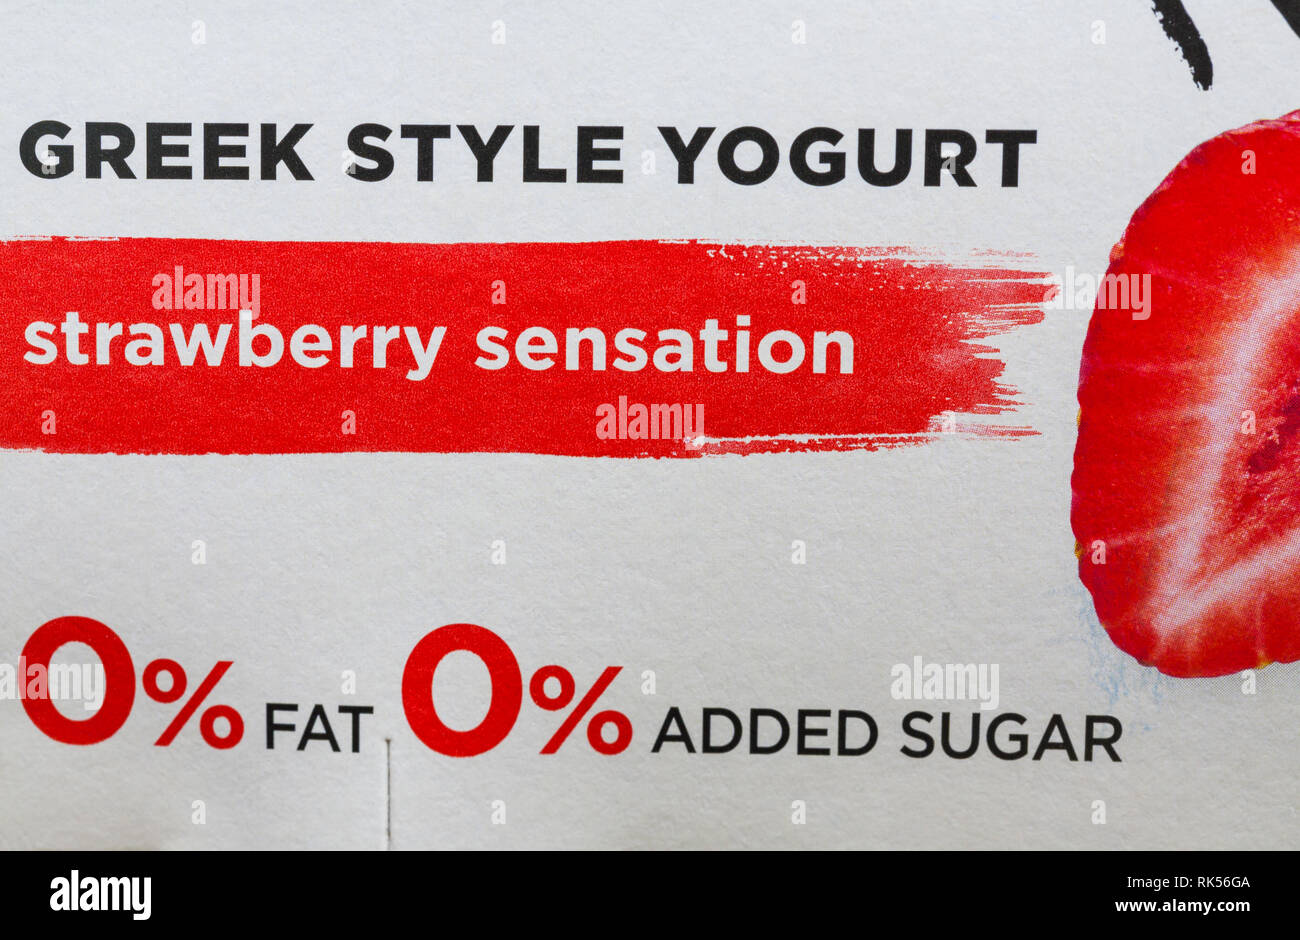 0% di grassi 0% zucchero aggiunto informazioni sul confezionamento per luce di Danone & Free in stile greco Yogurt sensazione di fragola Yogurt Yogurt Yogurt Foto Stock